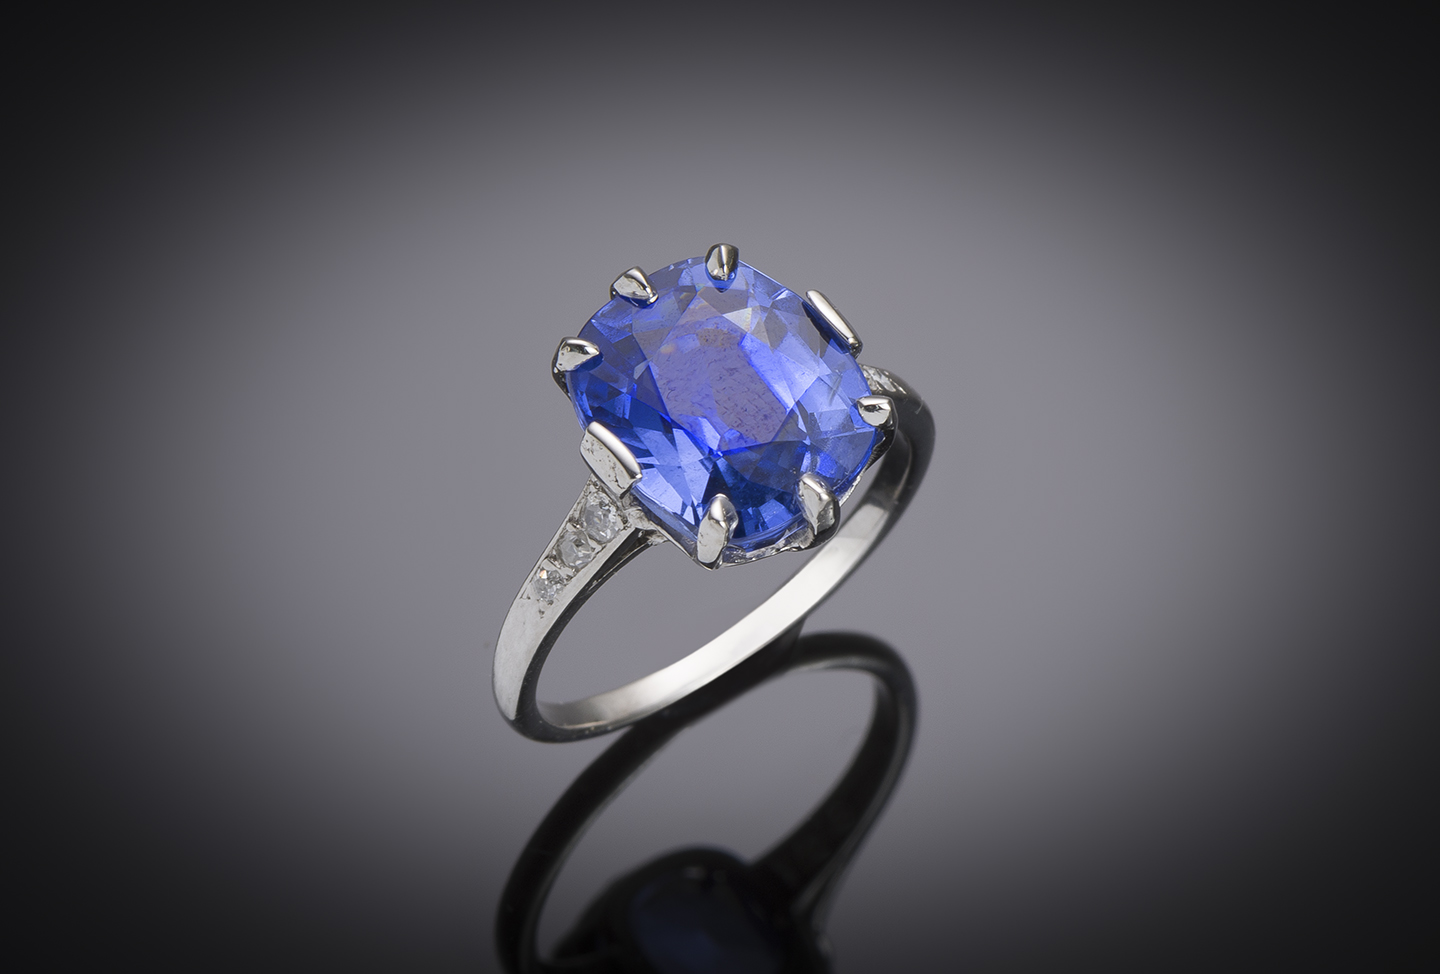 Bague Art déco saphir naturel, non chauffé bleu intense de 6,93 carats (certificat laboratoire) et diamants-1